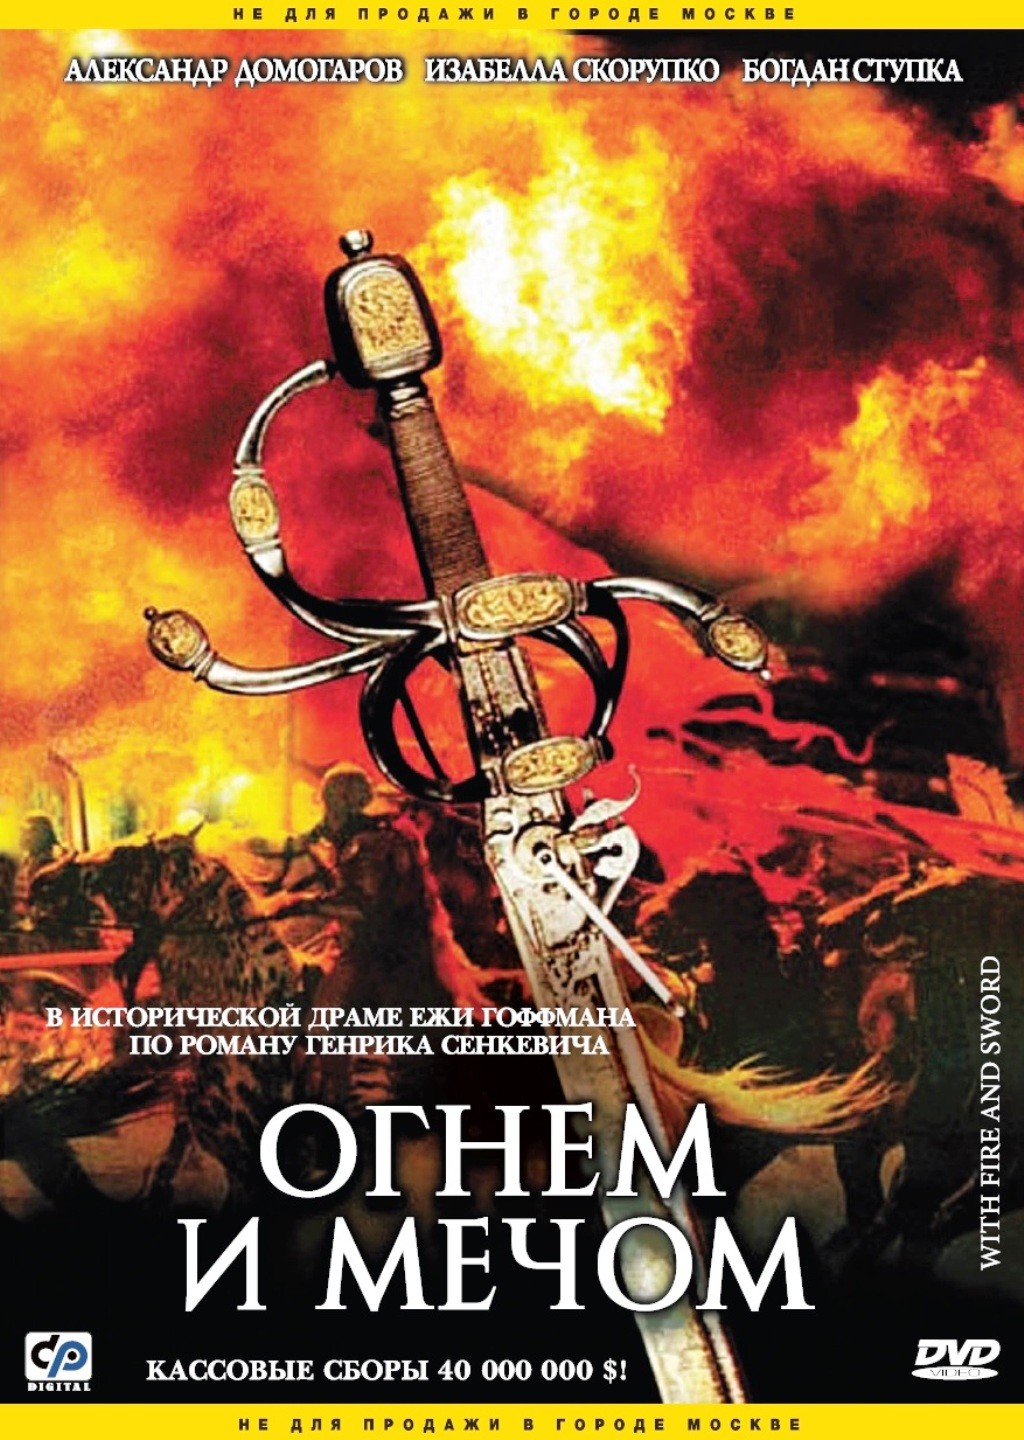 

Огнем и мечом (DVD)